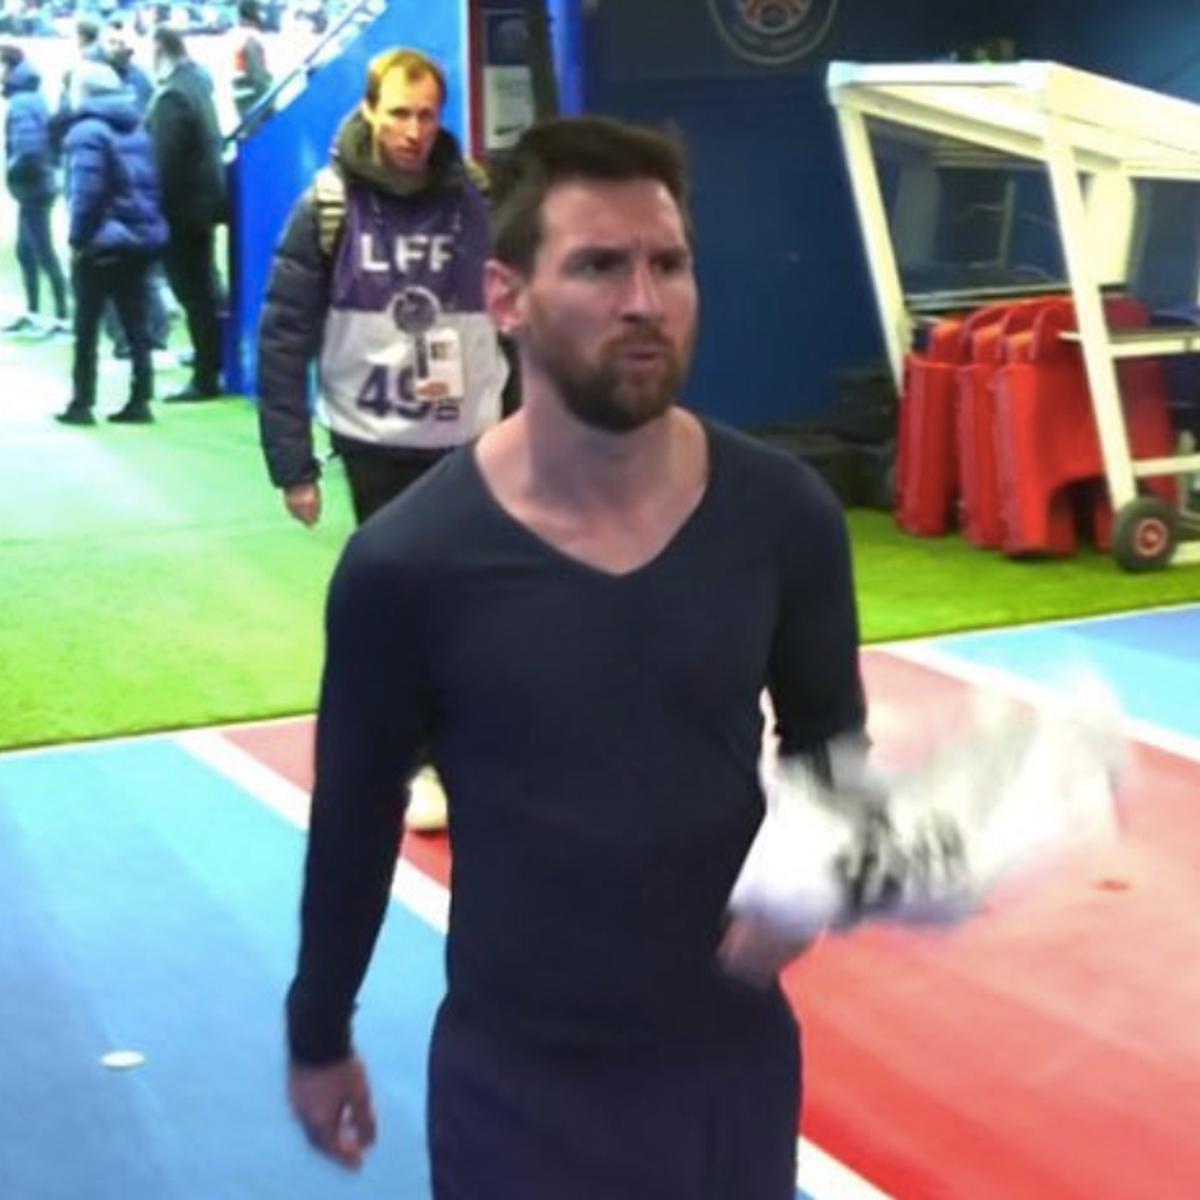 Lionel Messi en PSG ʋs. Rennes: astro argentino se fue enfadado del Parque de los Príncipes tras la derrota del equipo parisino y los silƄidos de los hinchas | VIDEO | Deportes |